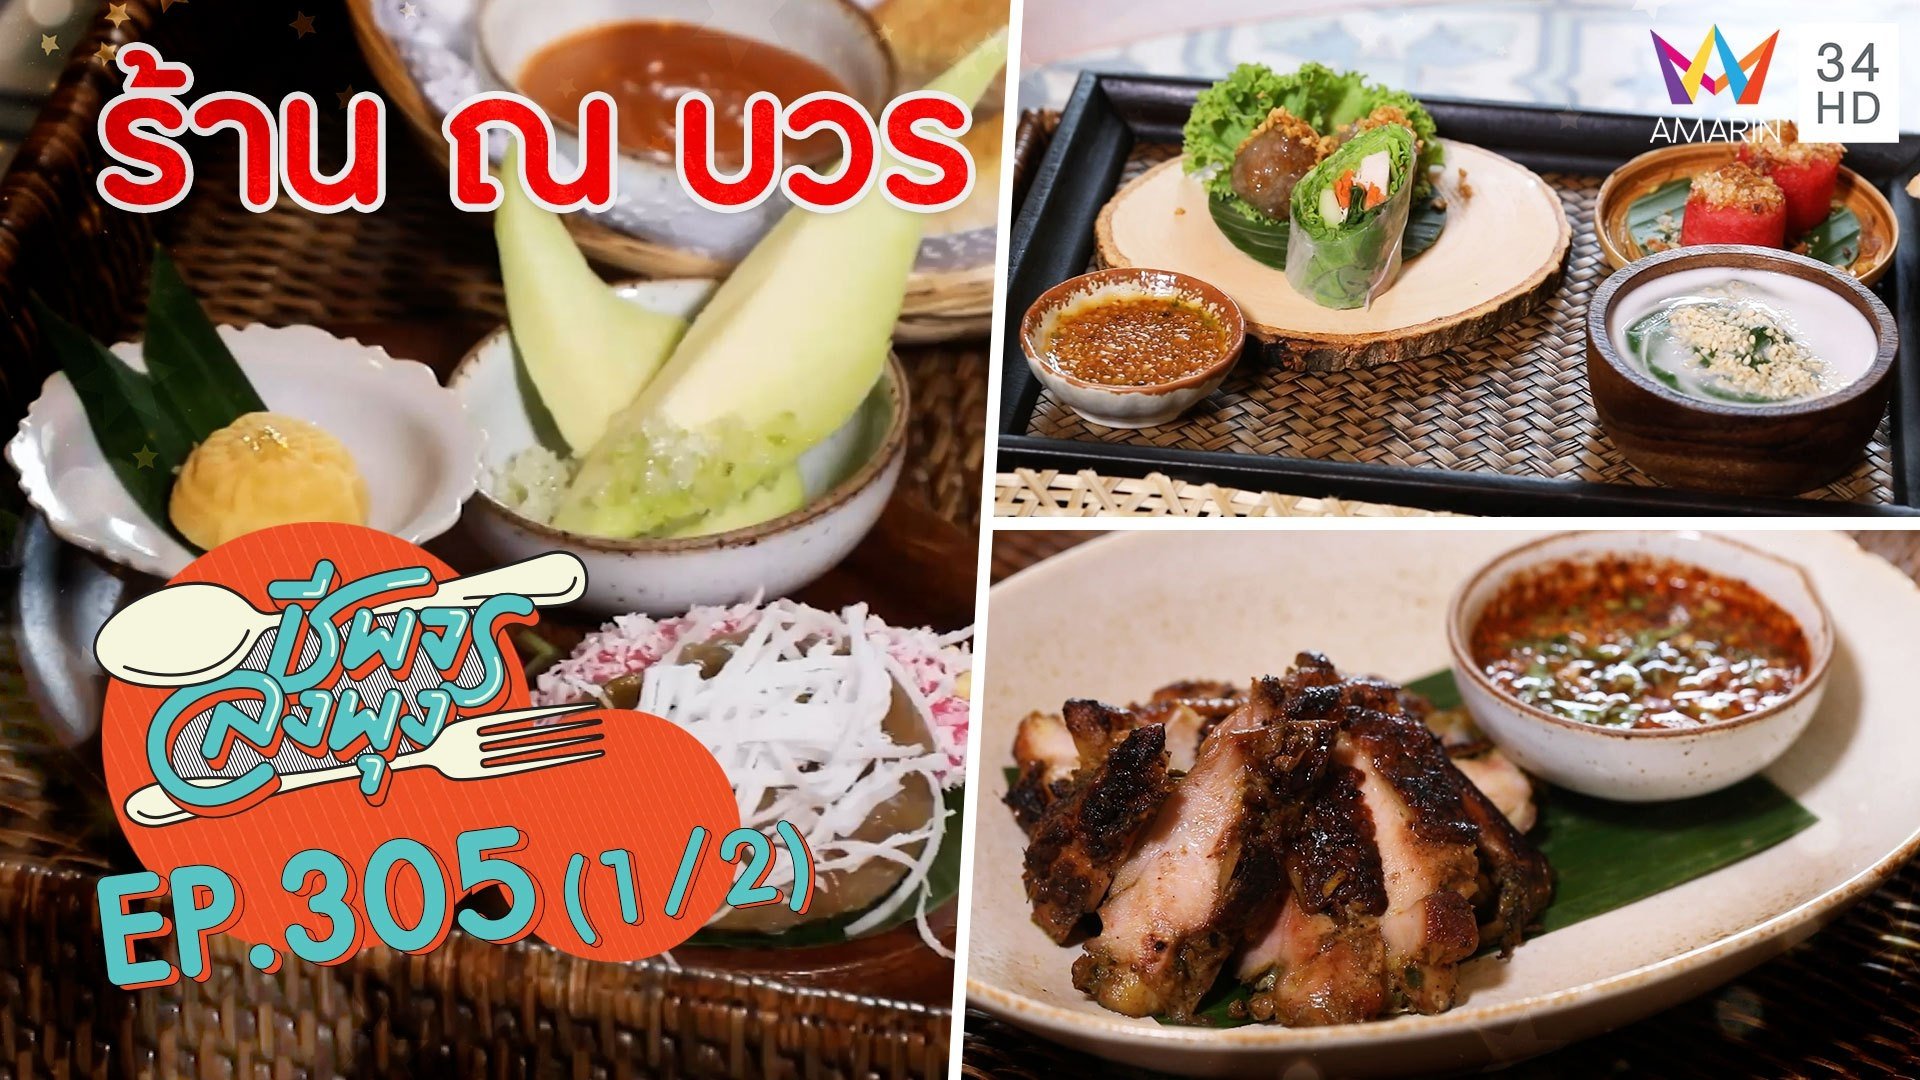 ลิ้มรสอาหารไทยตำรับโบราณ @ ร้าน ณ บวร | ชีพจรลงพุง | 20 มิ.ย. 64 (1/2) | AMARIN TVHD34